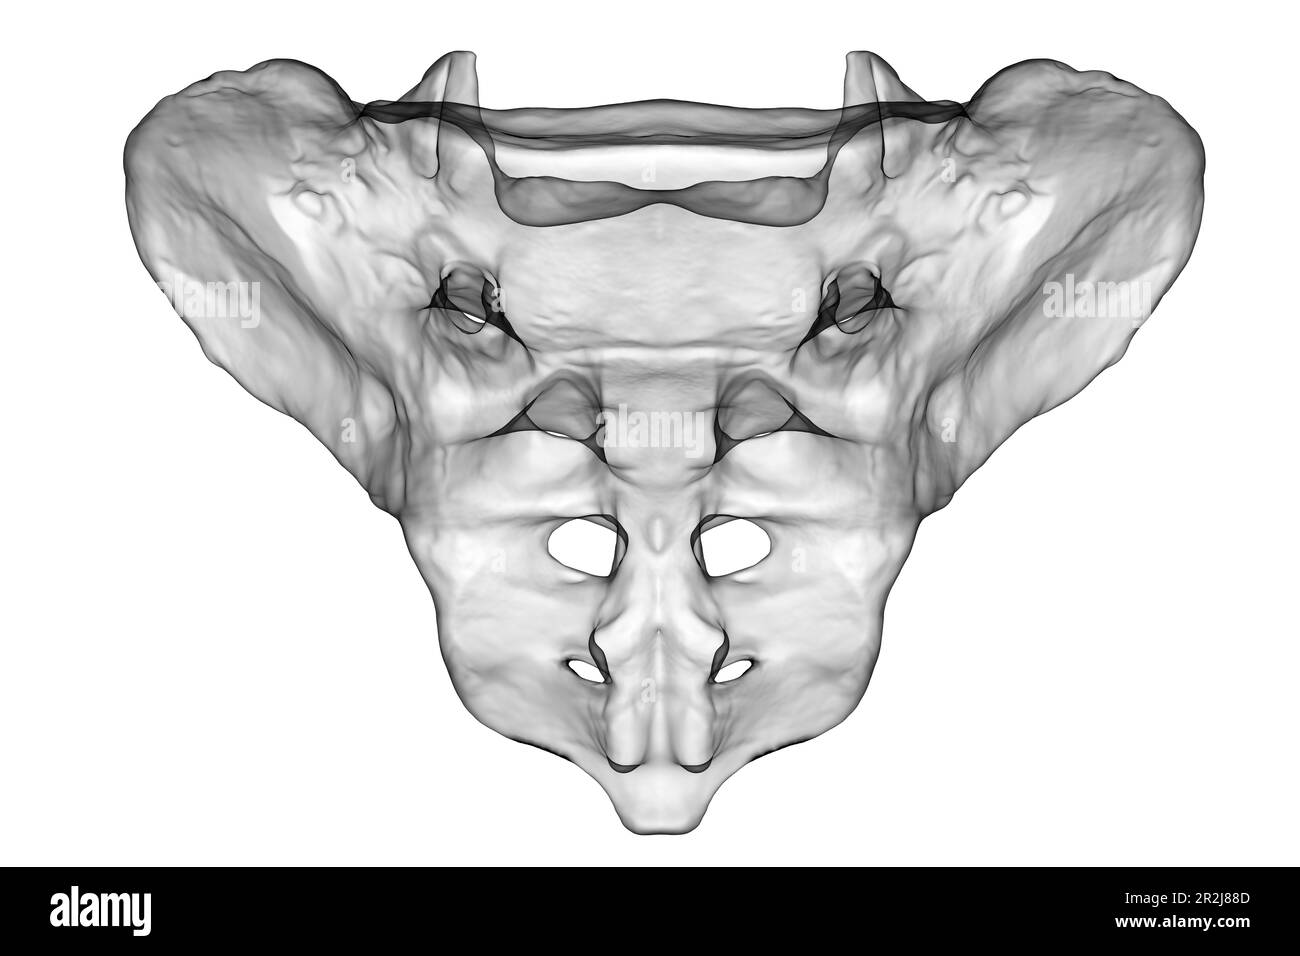 Illustrazione computerizzata dell'osso sacro, che ne mostra la forma, la struttura e le caratteristiche anatomiche. Vista frontale. Foto Stock